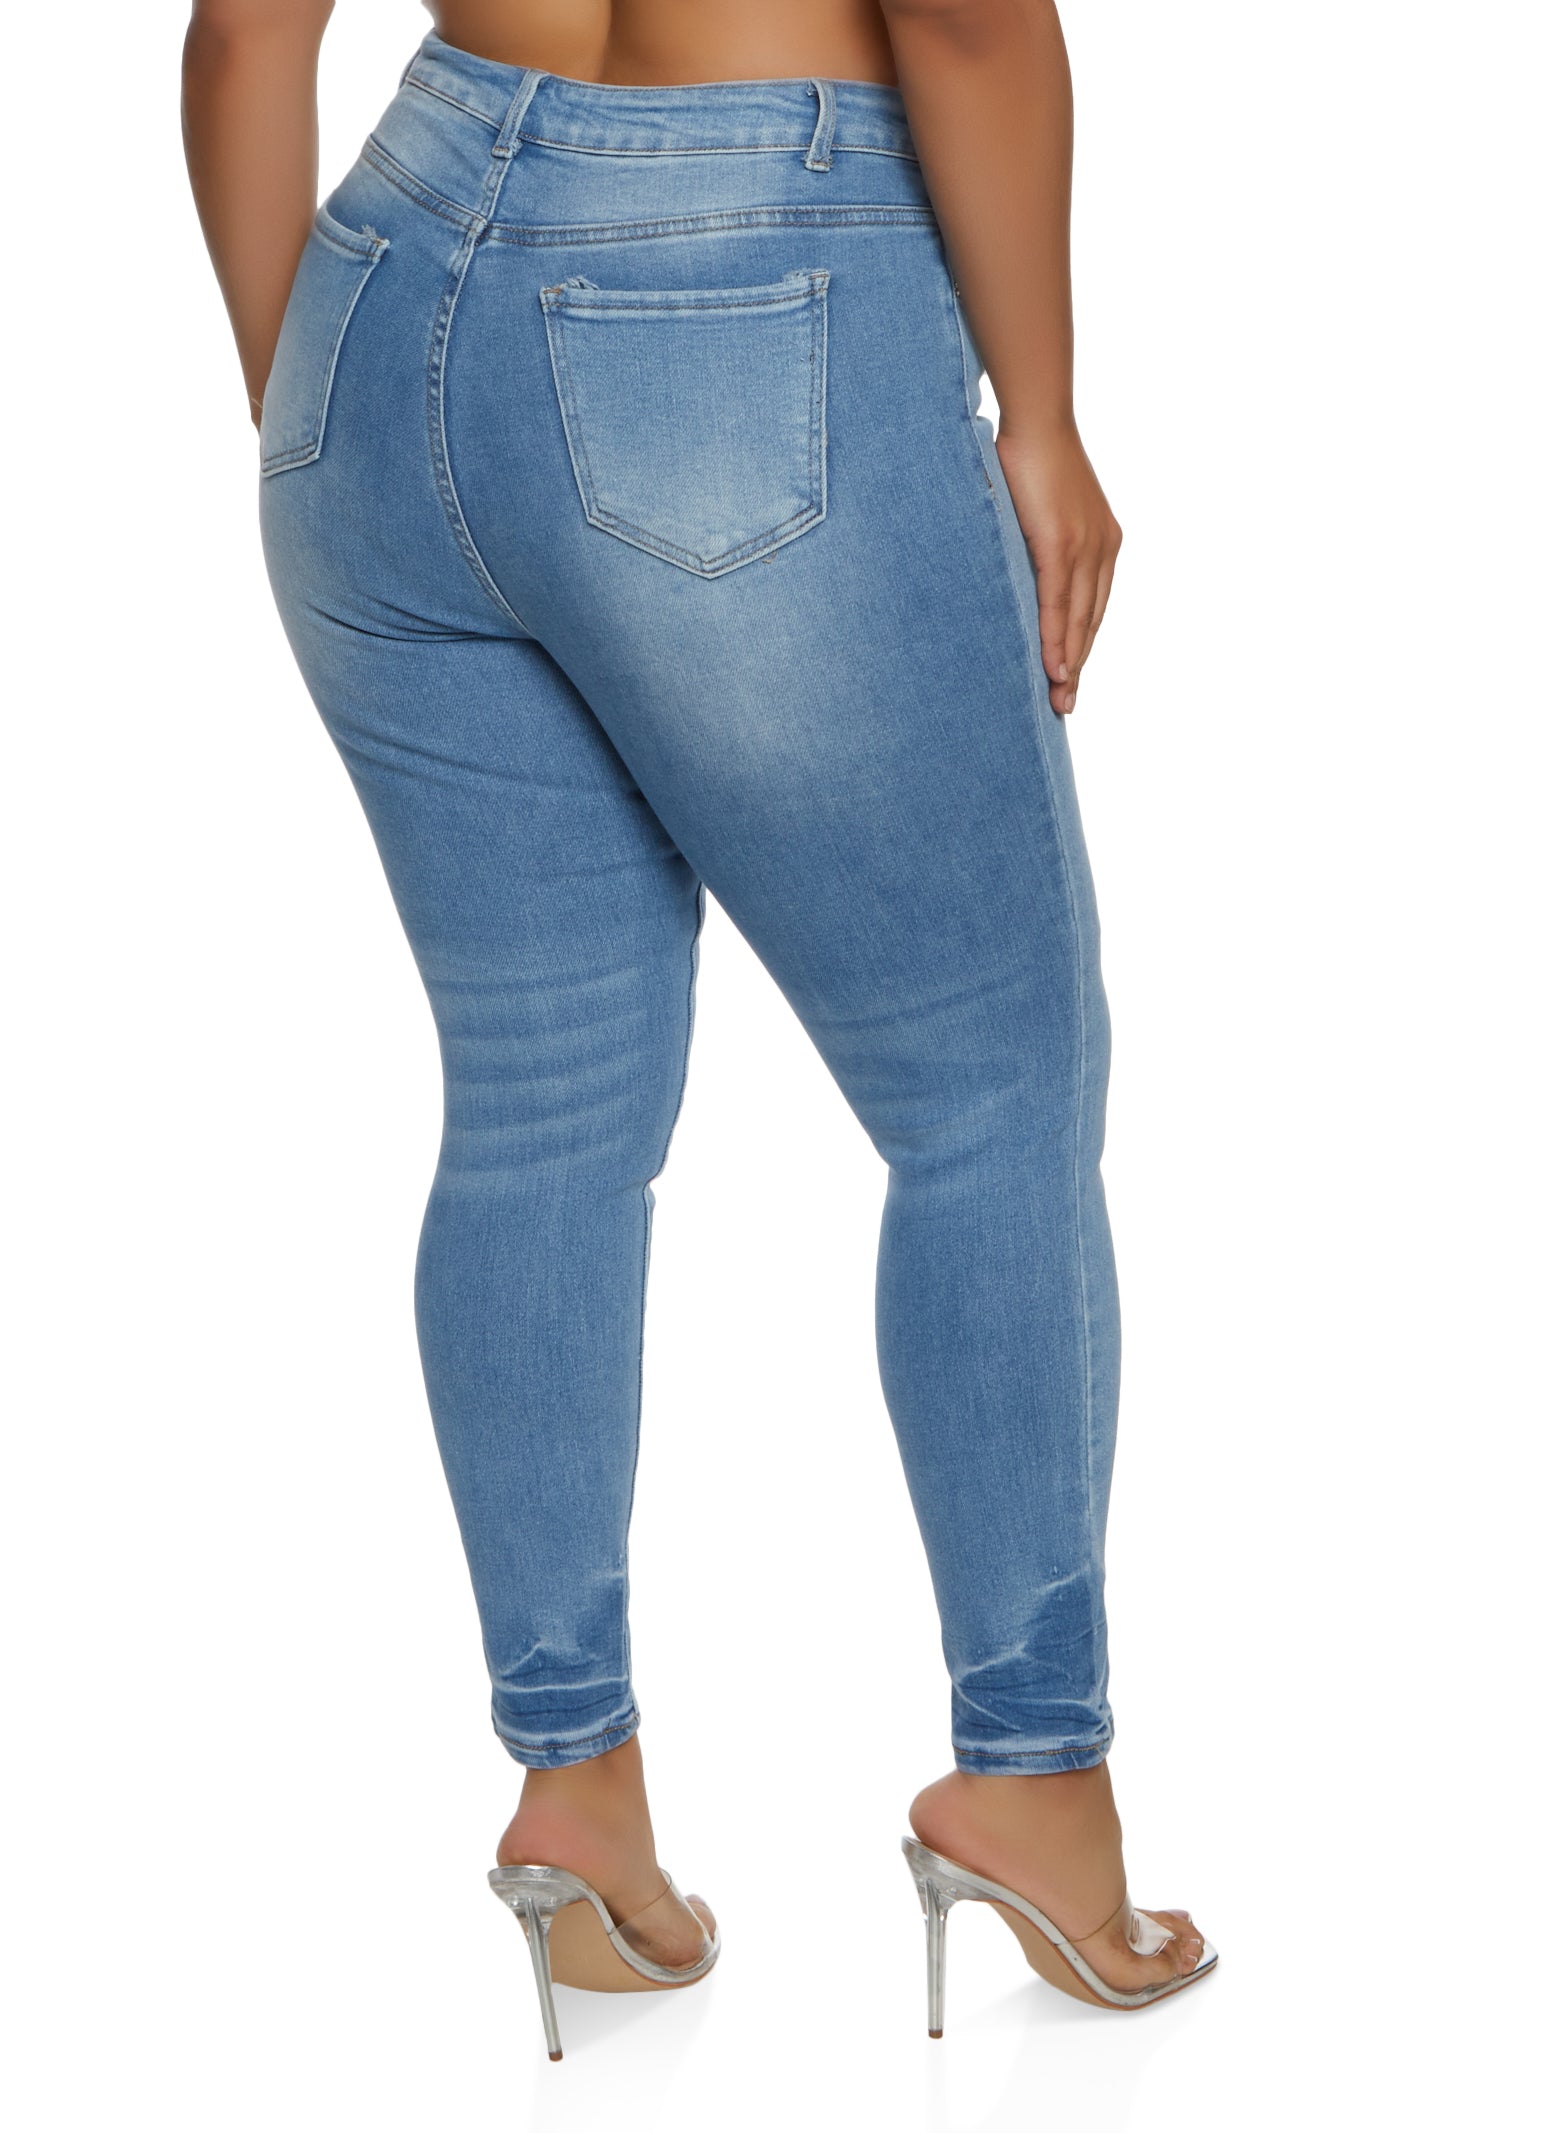 Crazy June Women's Plus Size Sculpting Slim Fit Slim Fit Jeans